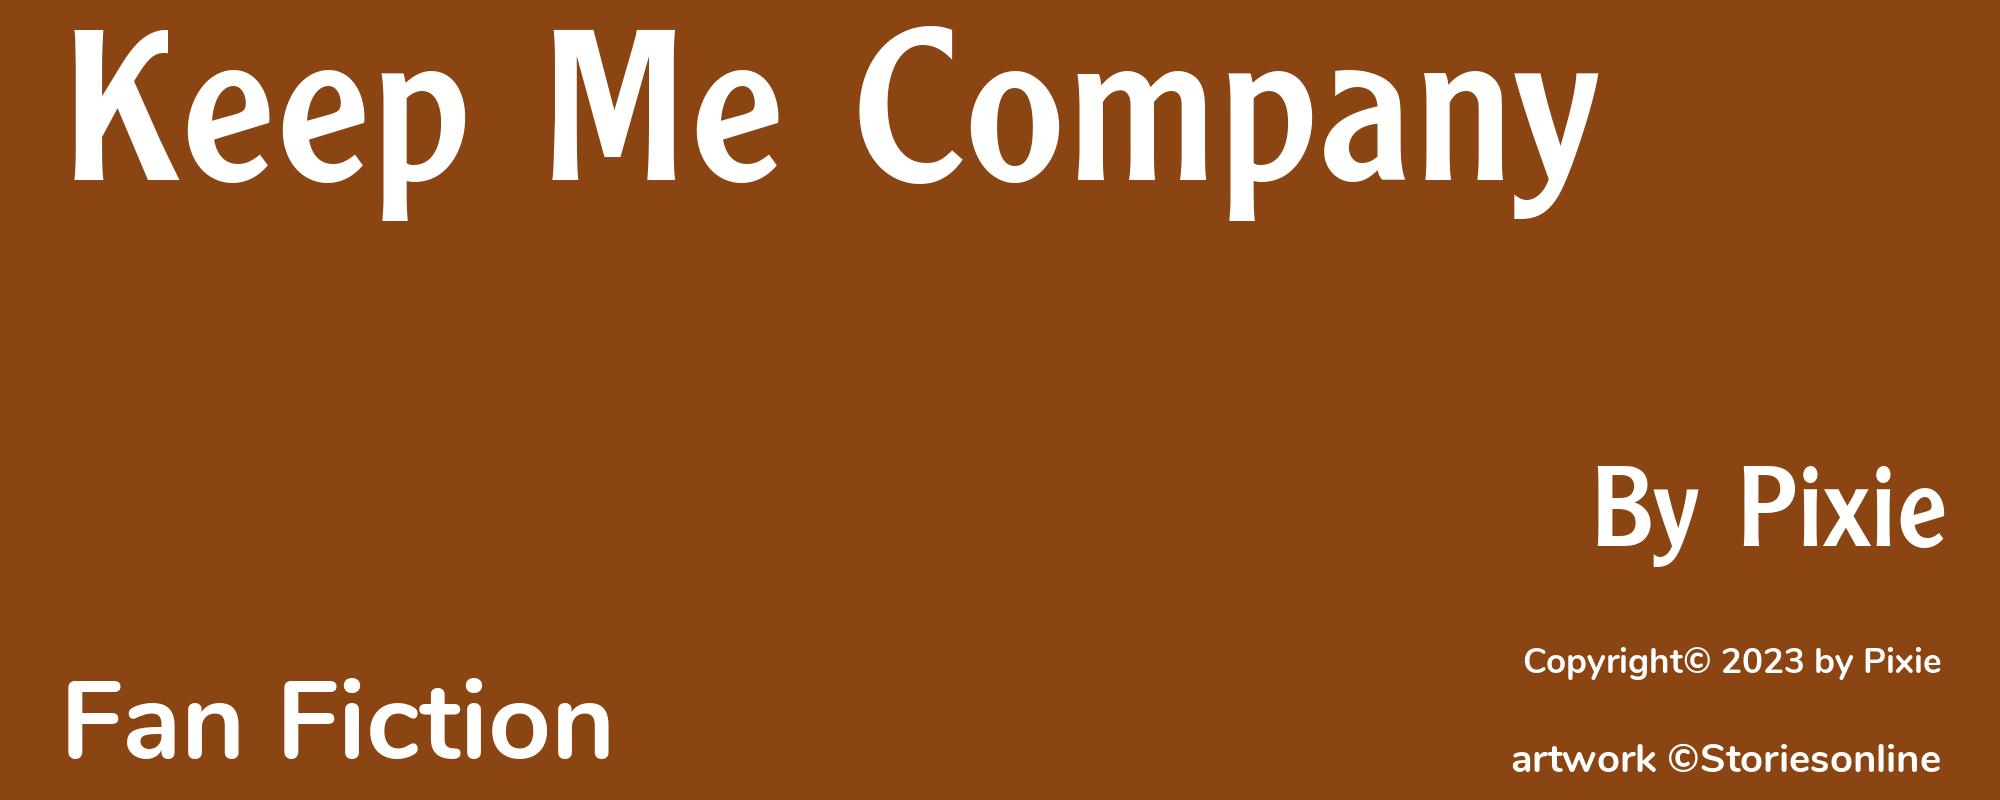 Keep Me Company - Cover